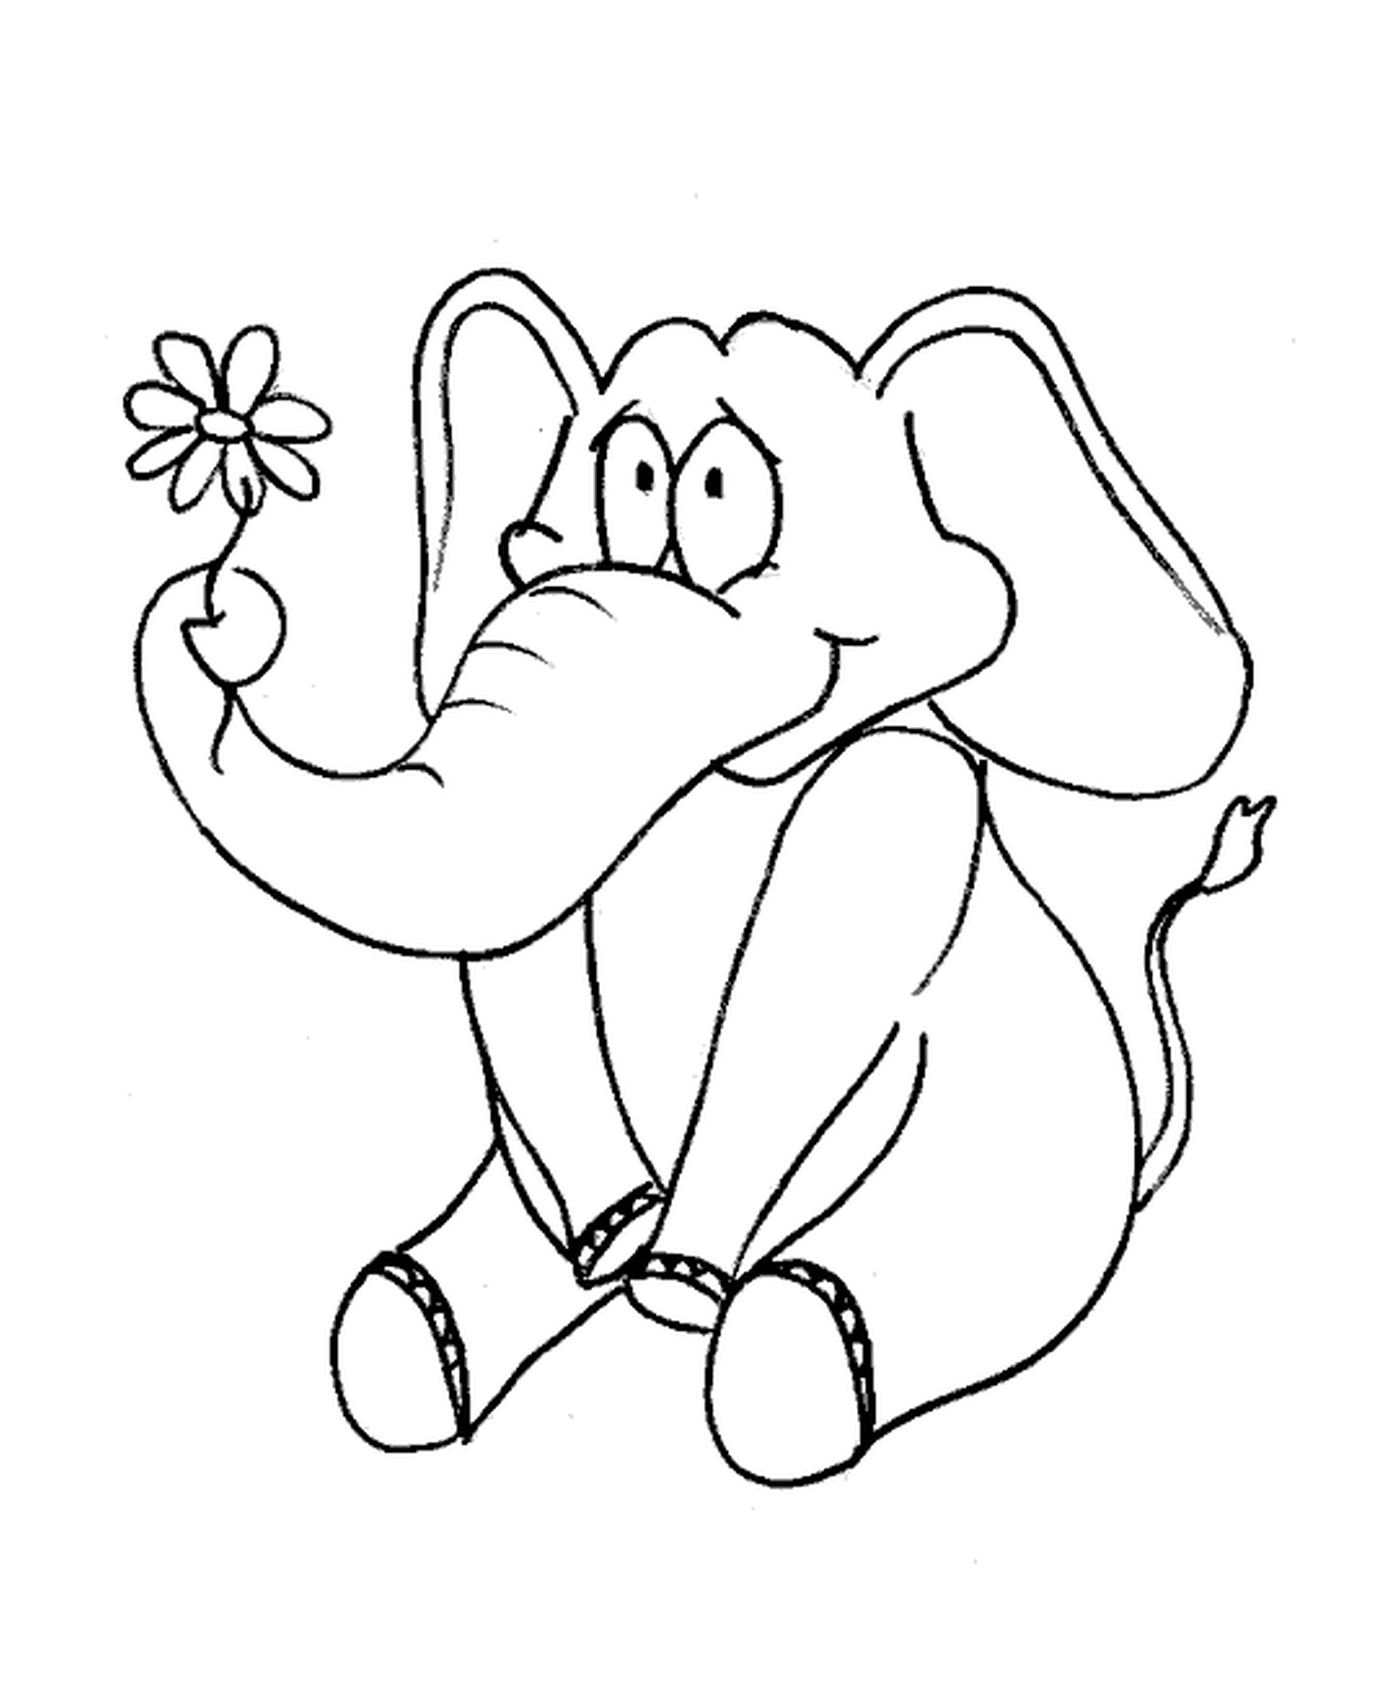  Ein Elefant, der eine Blume hält 